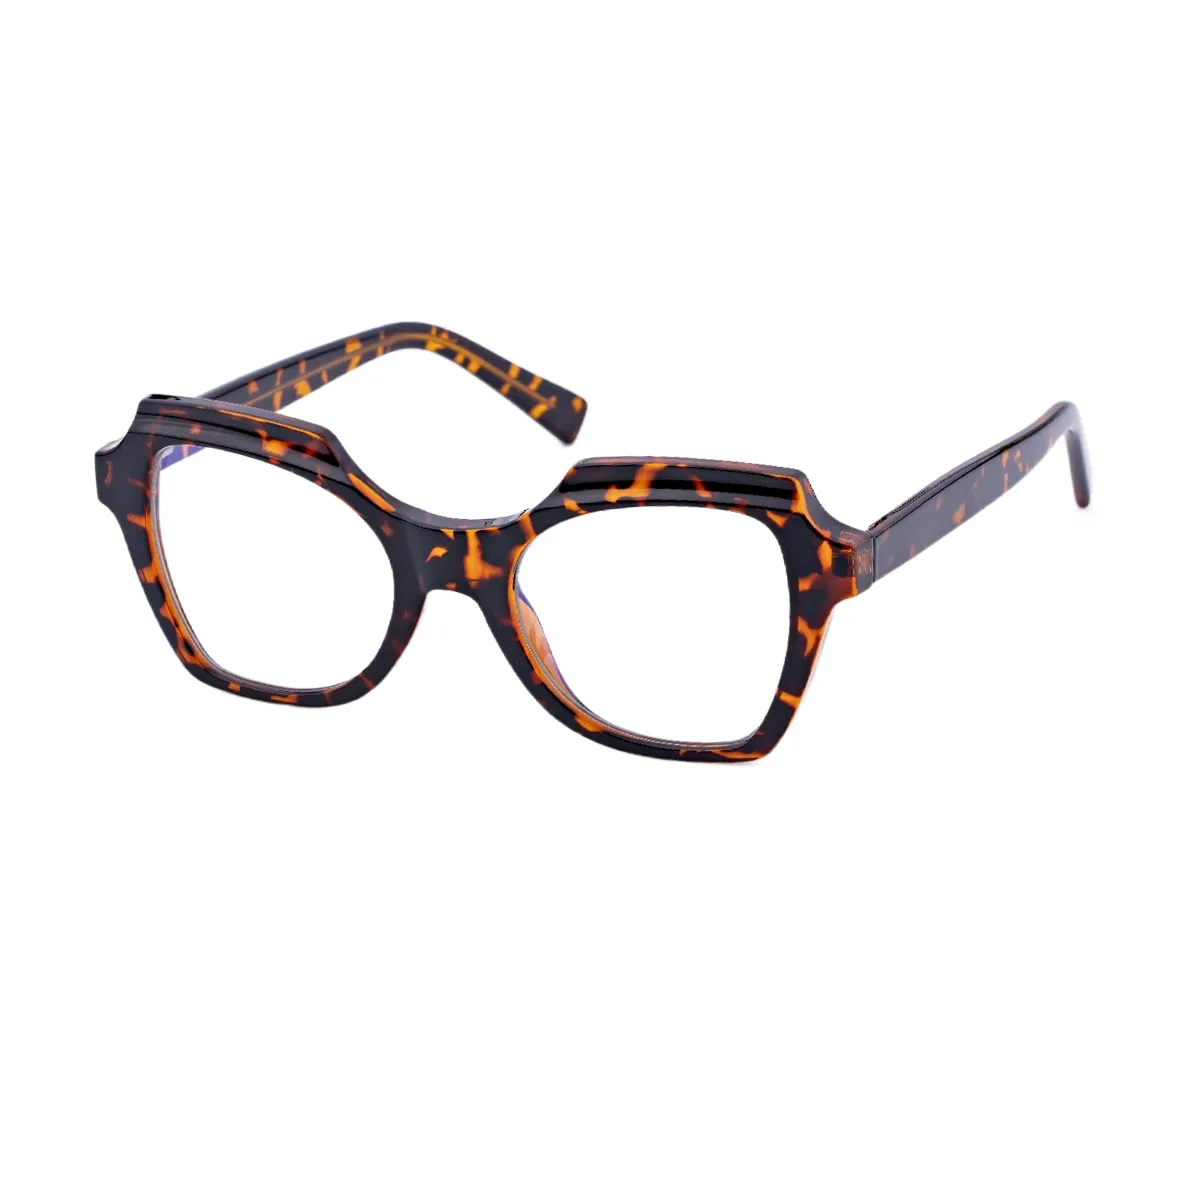 Enid - Cat-eye Tortoiseshell Glasses for Women - EFE